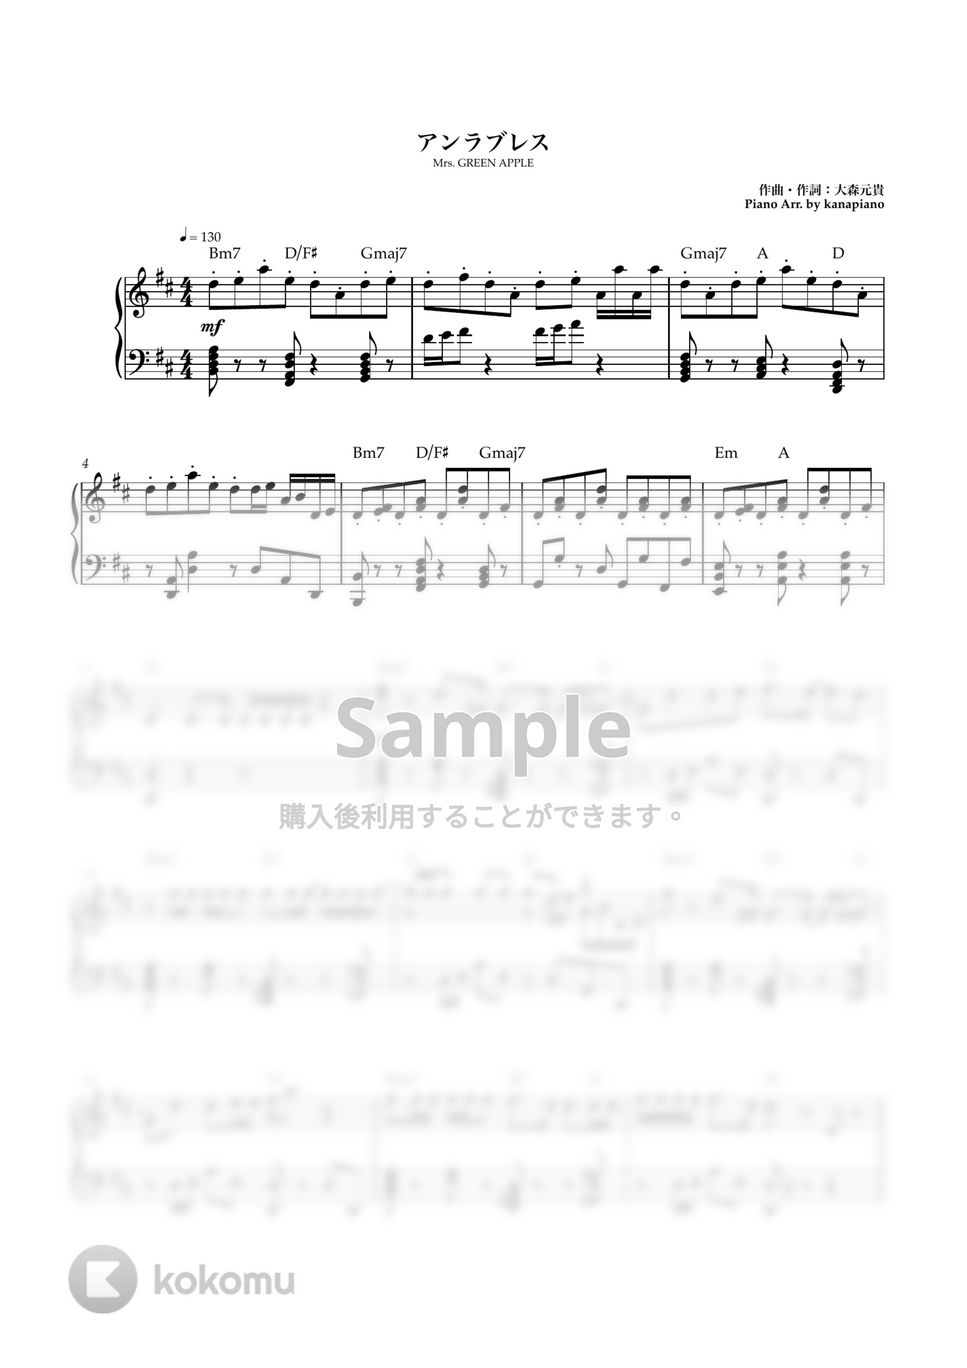 Mrs. GREEN APPLE - アンラブレス(中級) (ピアノソロ/ANTENNA) by kanapiano